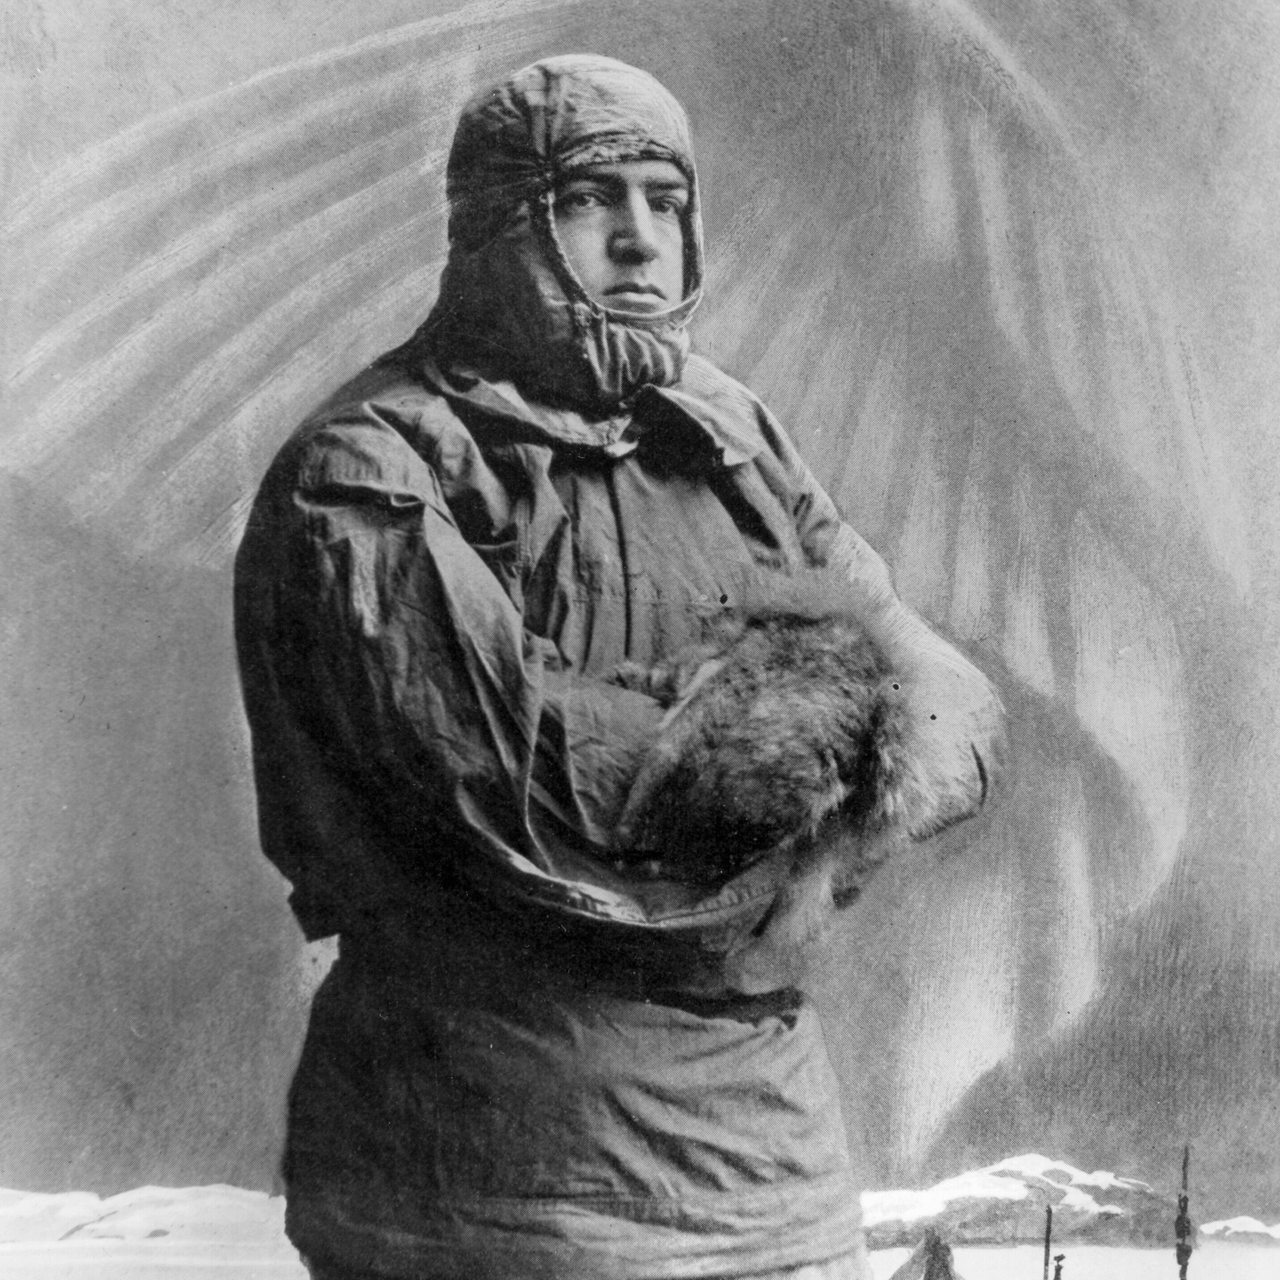 Ernest Shackleton während einer Polarexpedition 1909